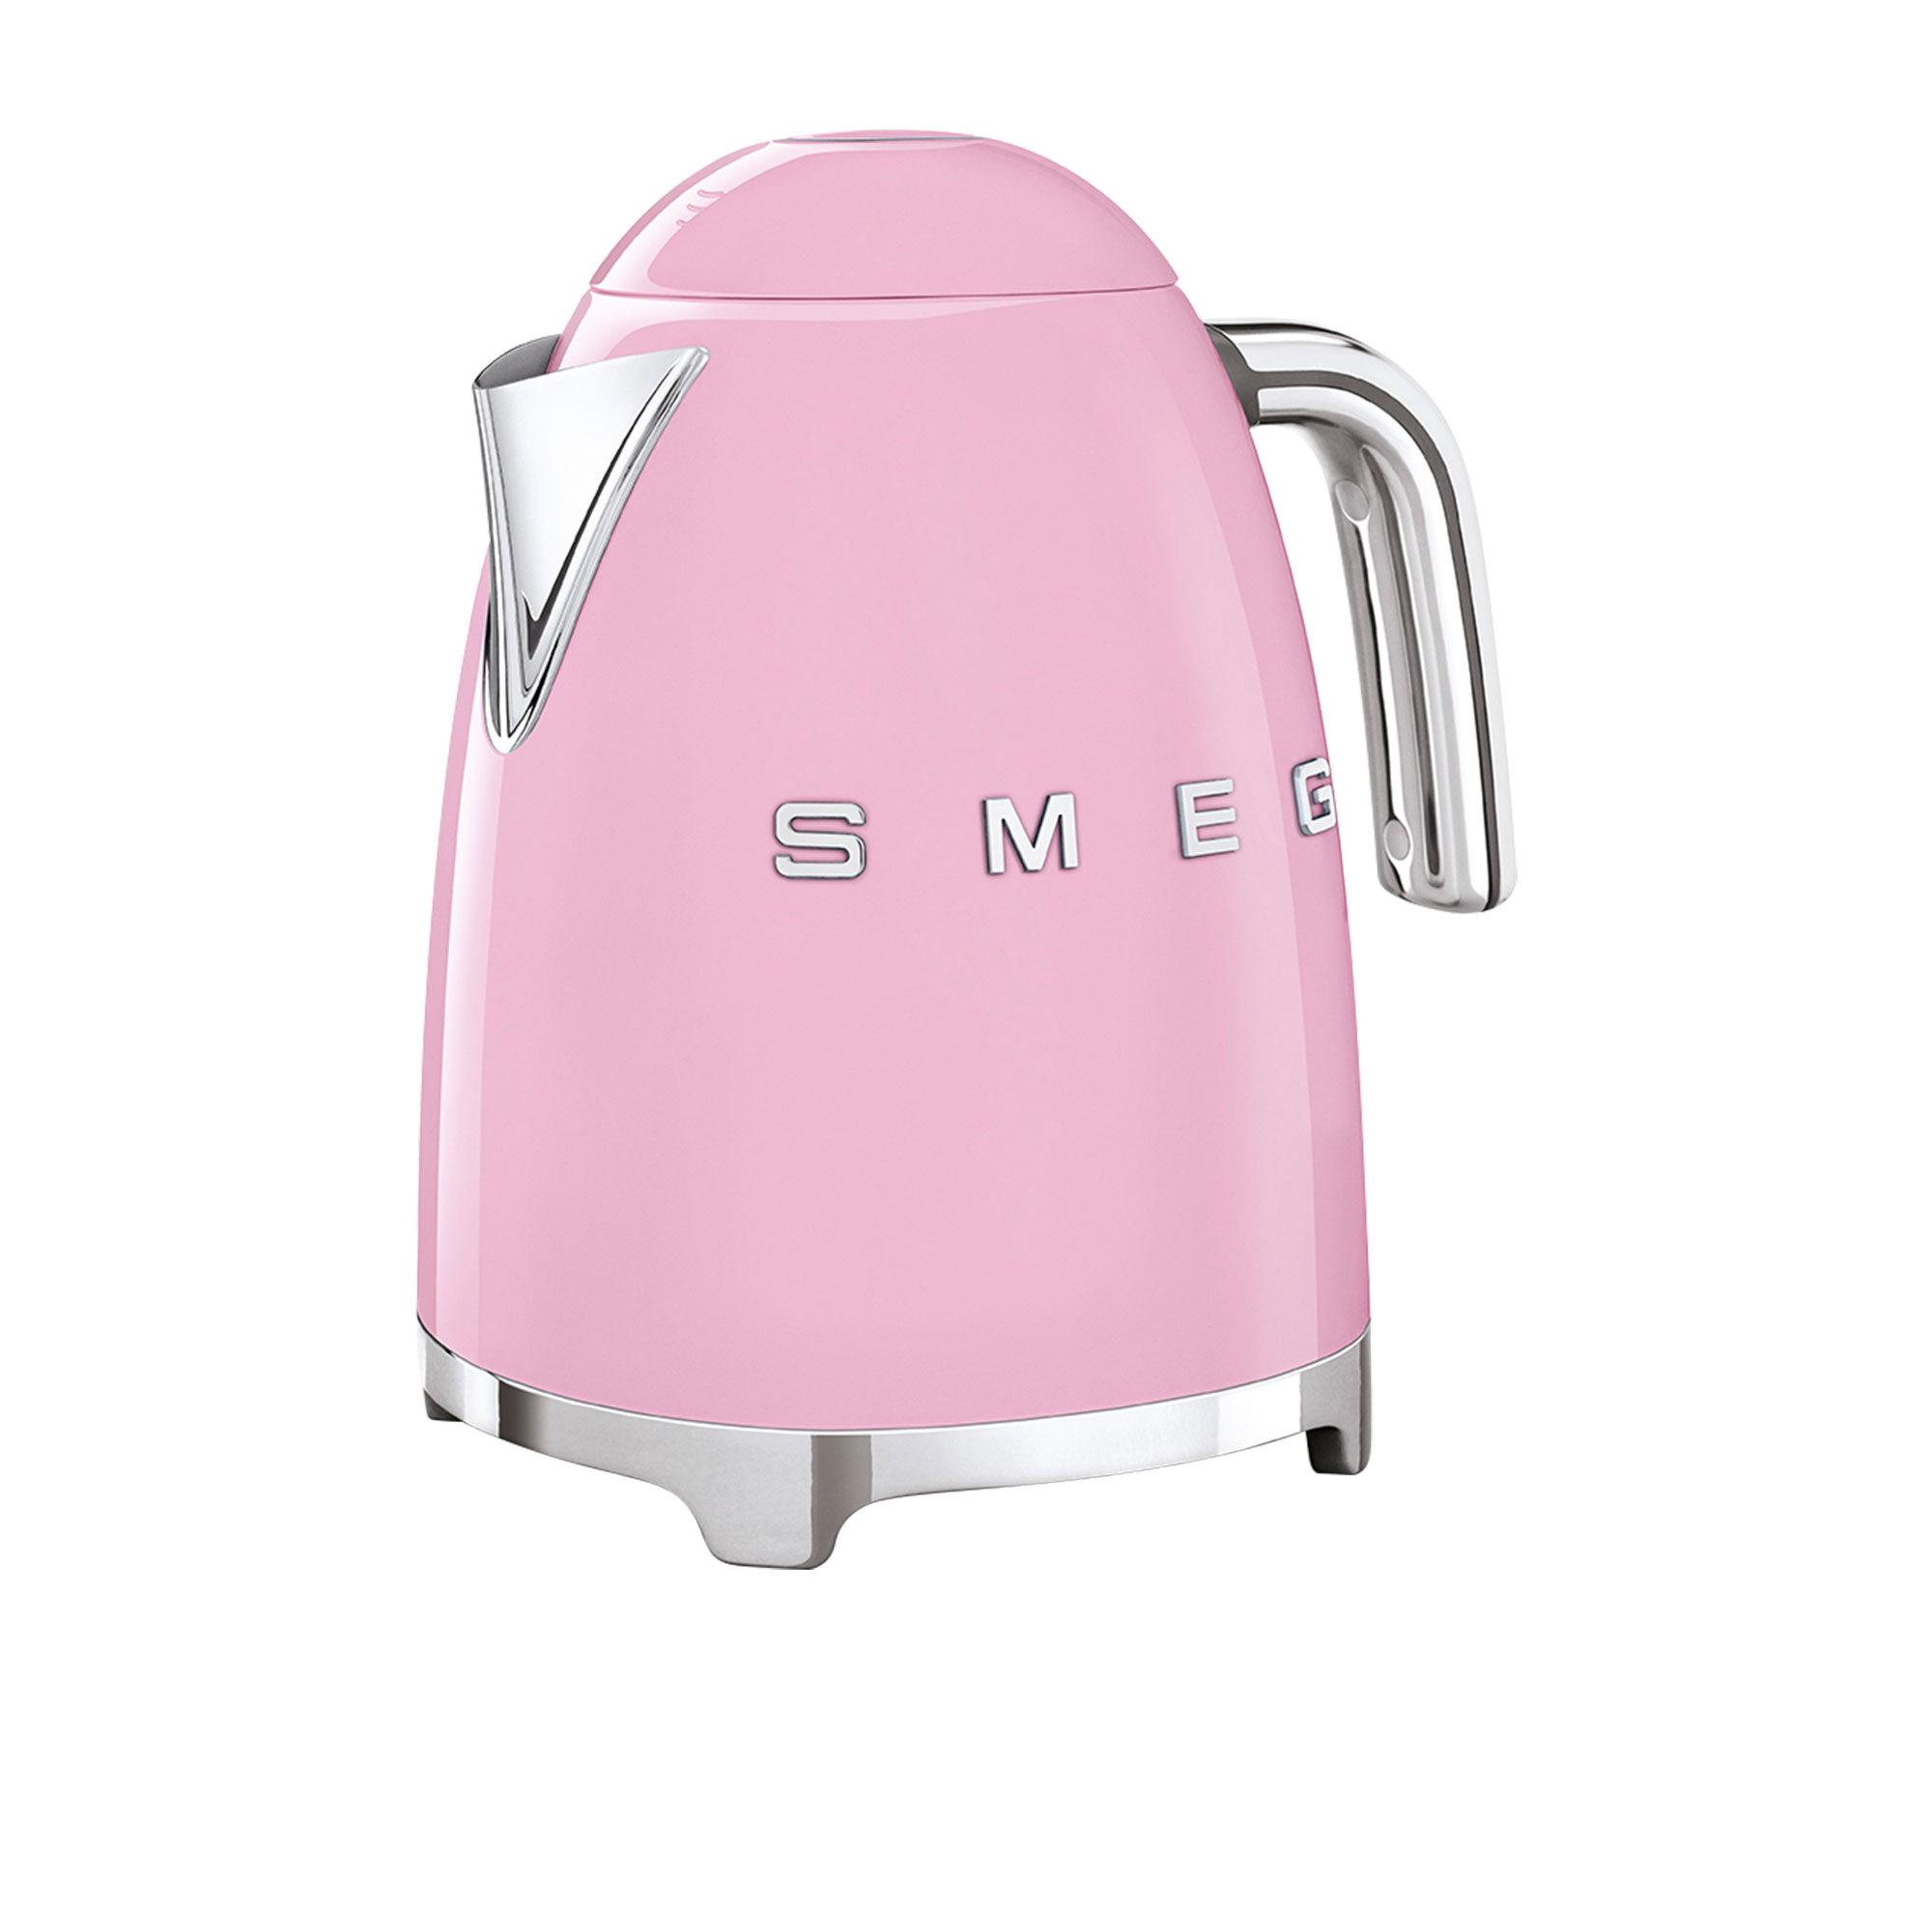 Smeg 50's Retro Style Kettle 1.7L Pastel Pink Image 2